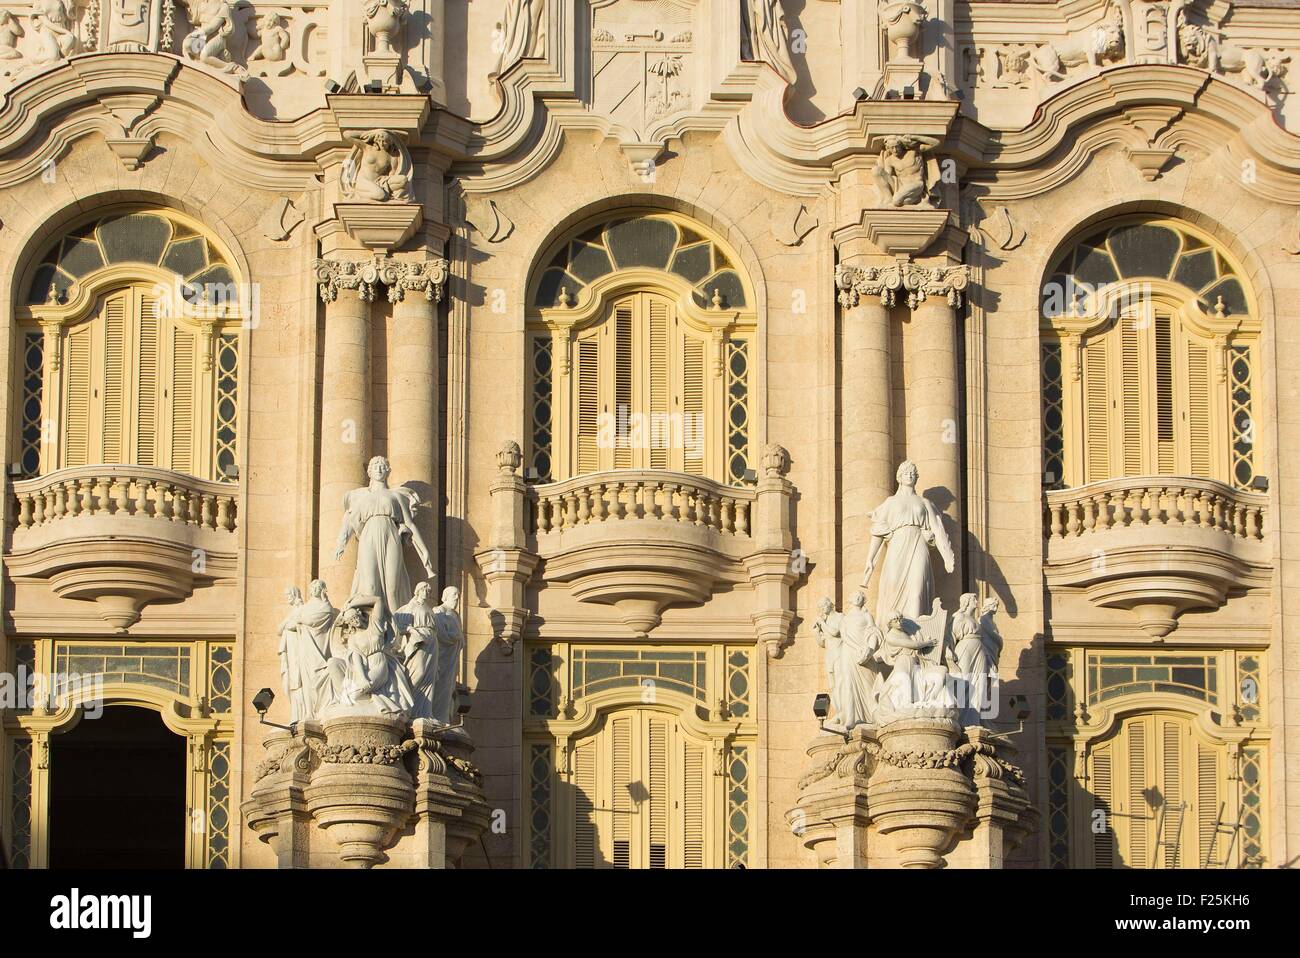 Cuba, Ciudad de la Habana province, La Havana, Centro Habana district, the Gran Teatro de la Habana in neo baroque style Stock Photo